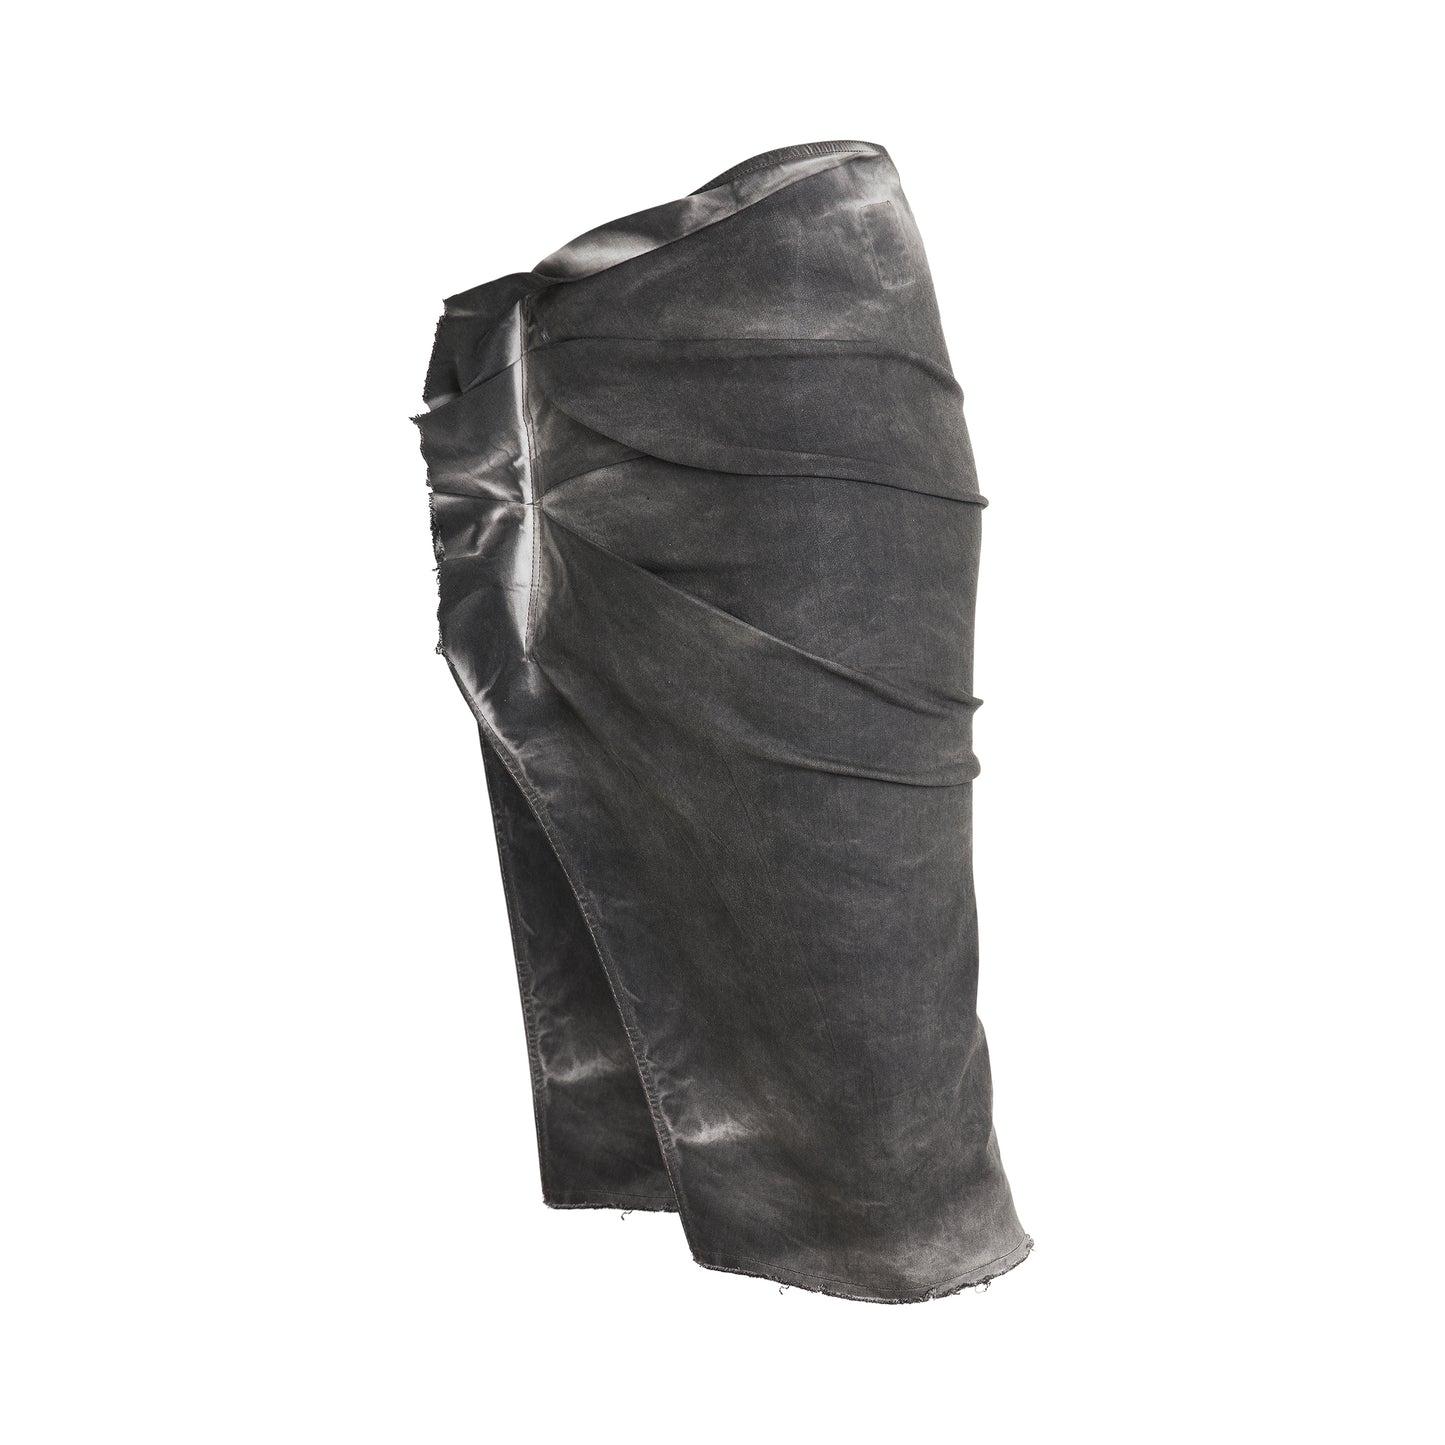 EDFU Knee Skirt in Dark Dust